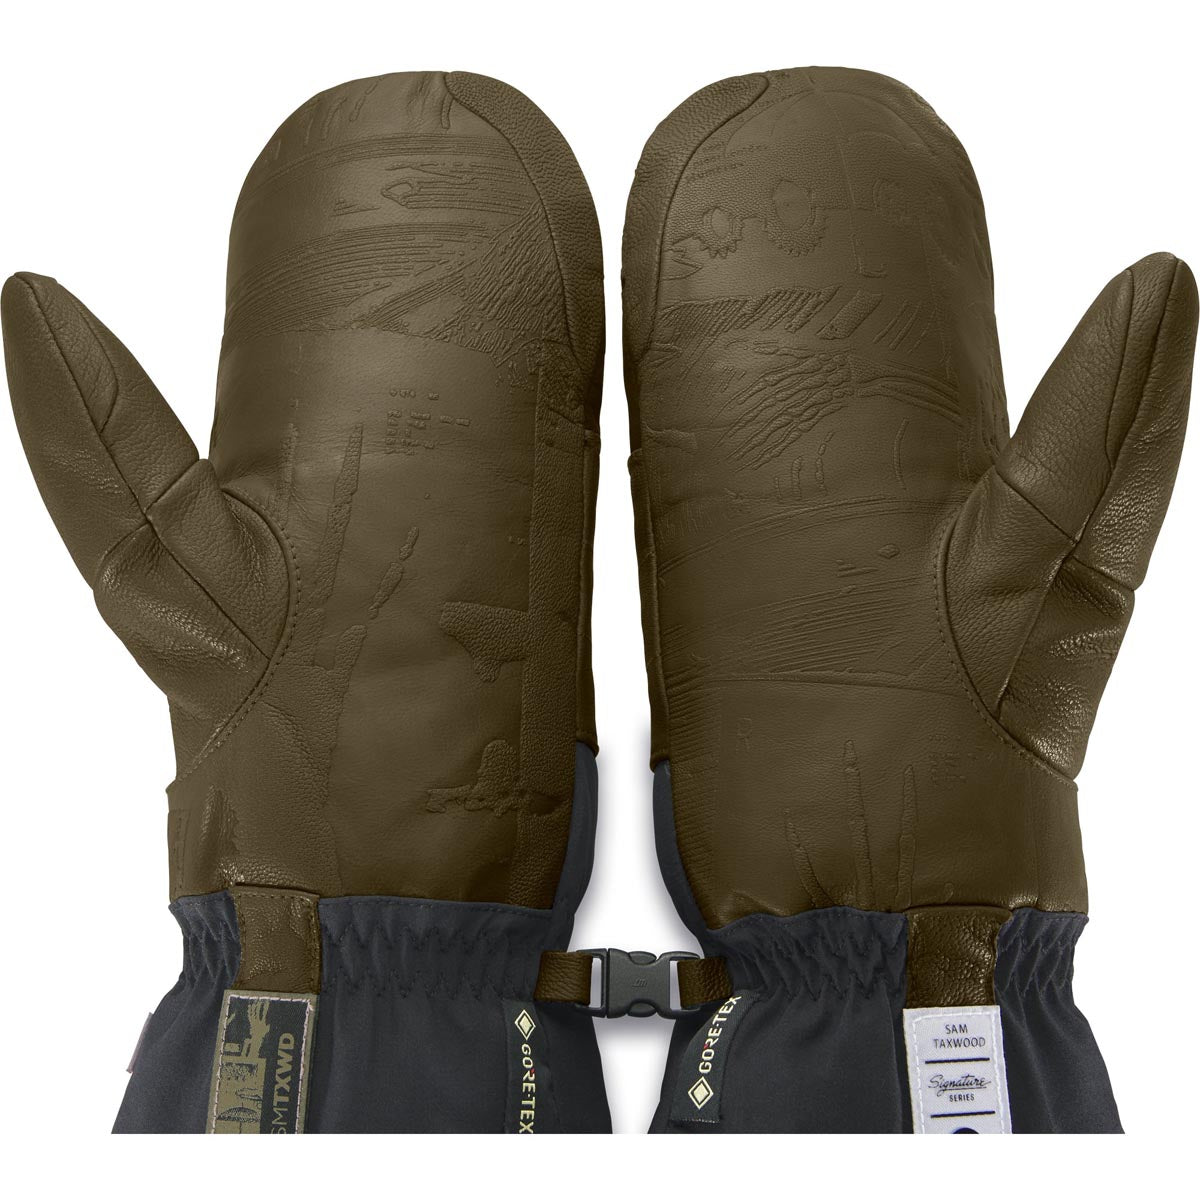 Dakine Team Baron Gore-tex Mitt Sam Taxwood Snowboard Gloves - Dark Olive image 2